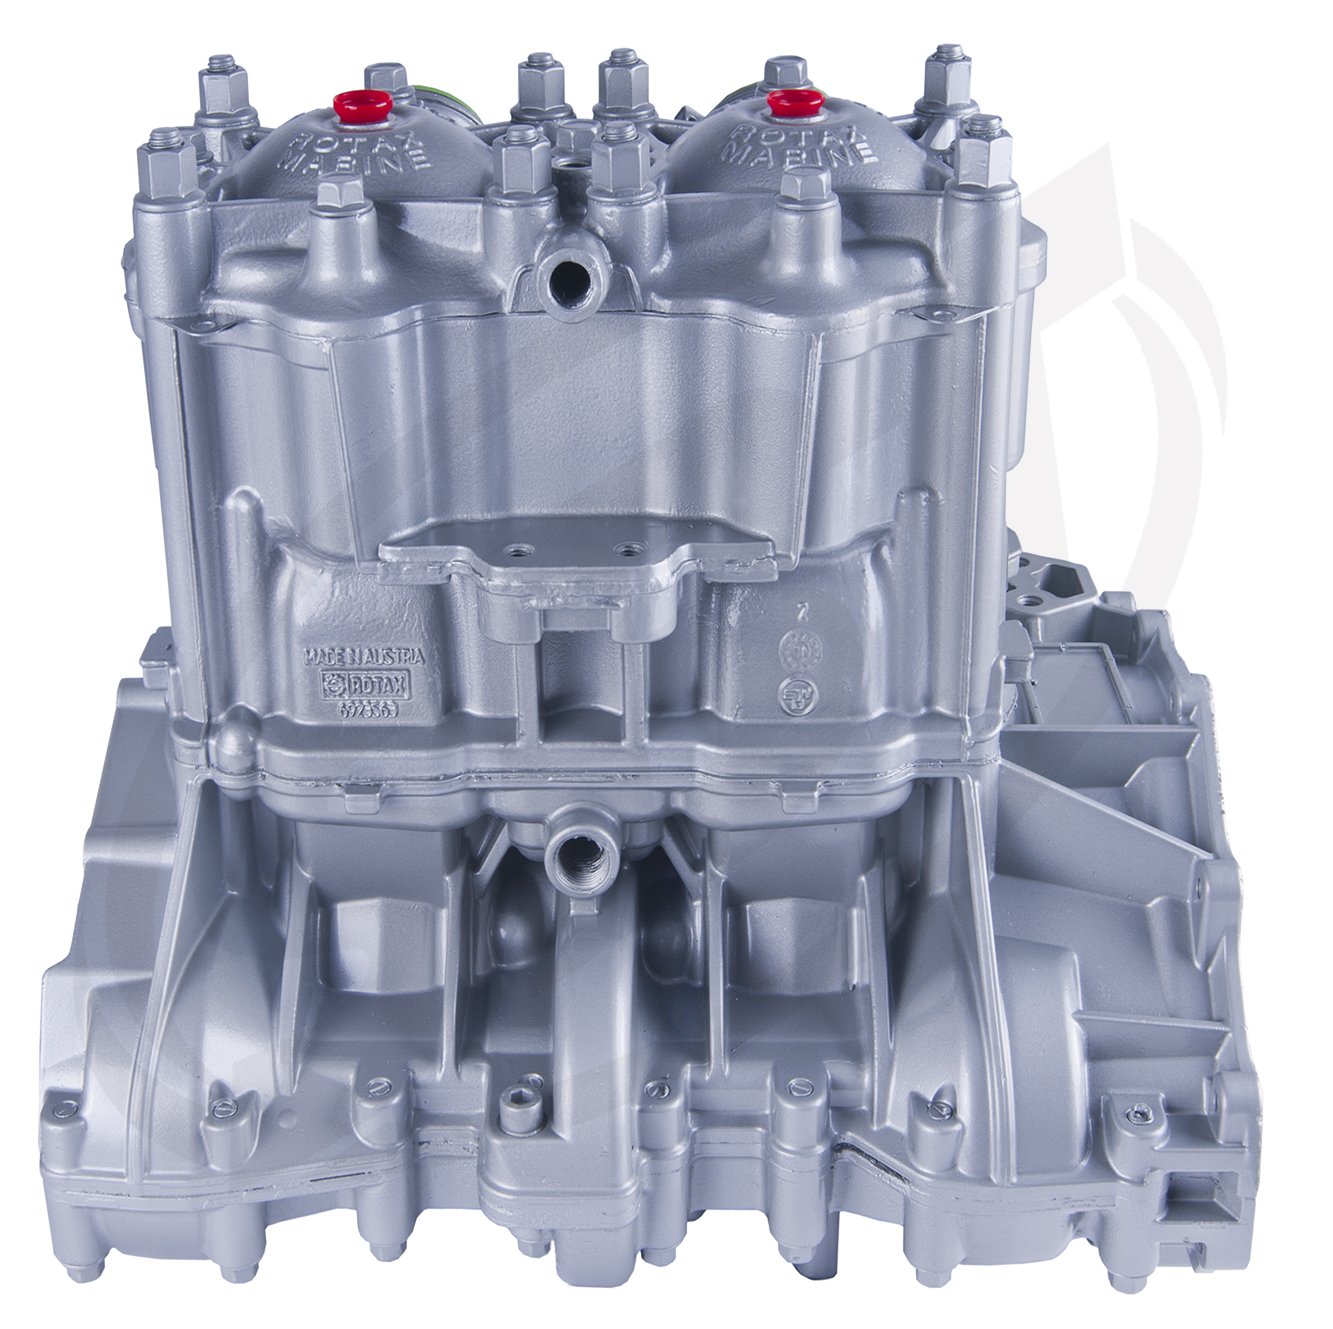 Engine for Sea-Doo 951 /947 Silver GSX LTD /GTX /XP LTD /VSP LTD 